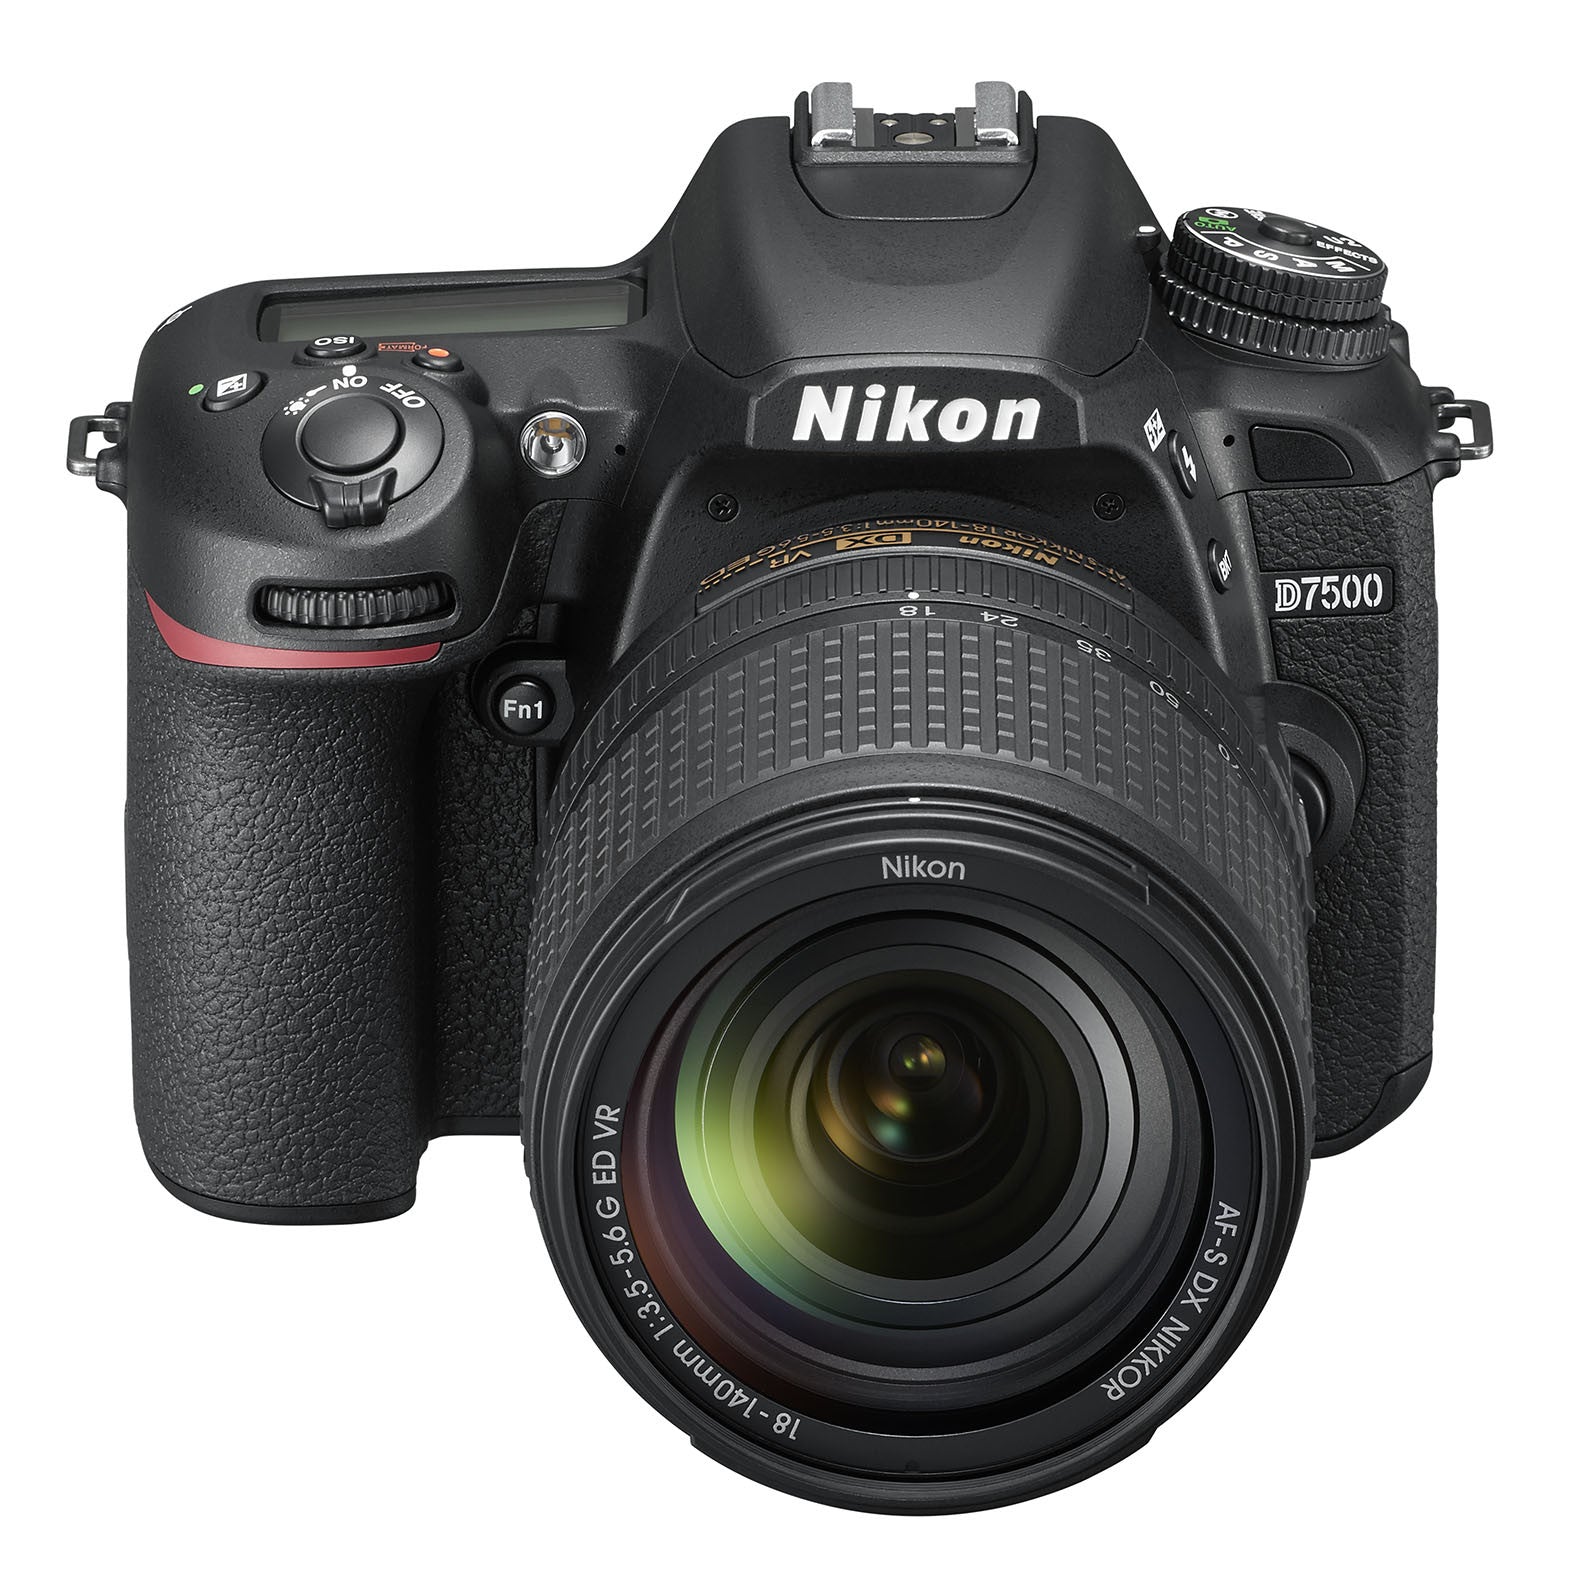 Nikon D7500 DSLR Camera with 18-140mm VR DX Lens